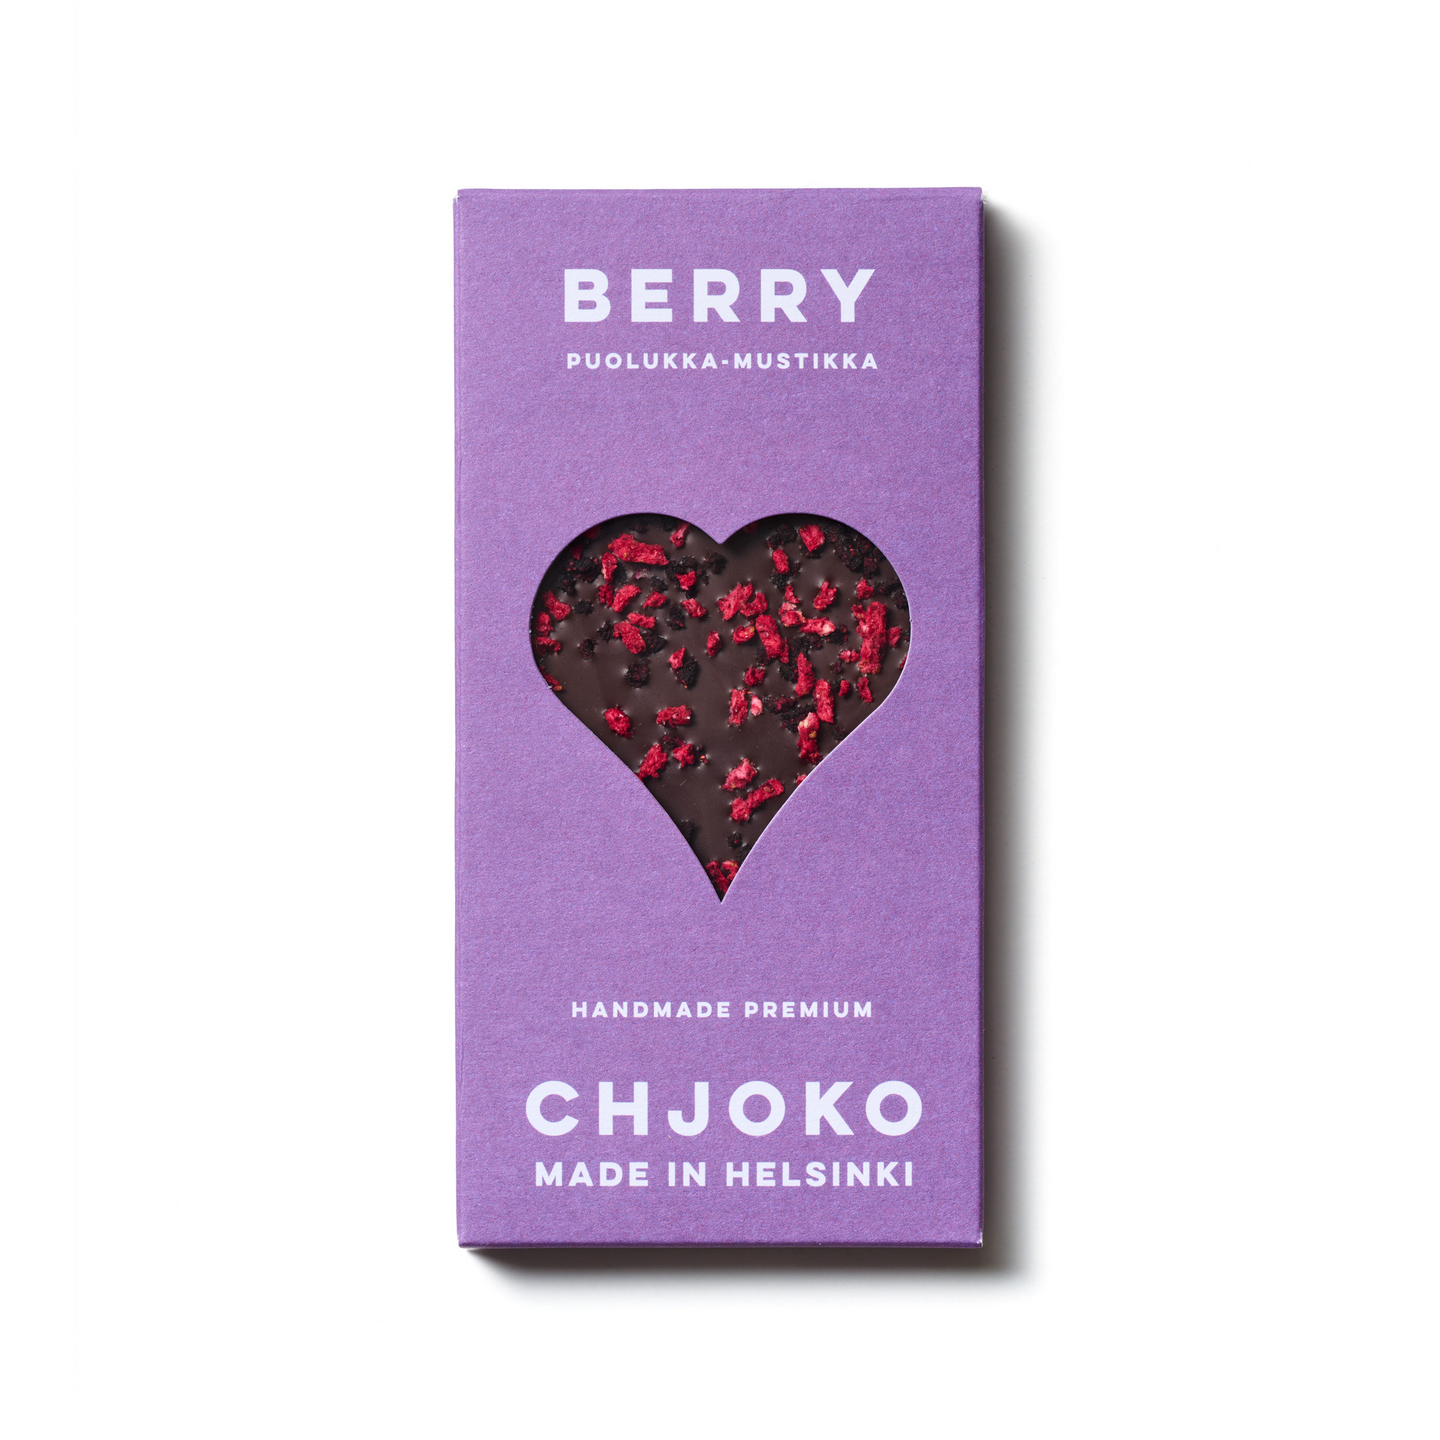 Chjoko Berry tummasuklaa puolukka-mustikka 80g